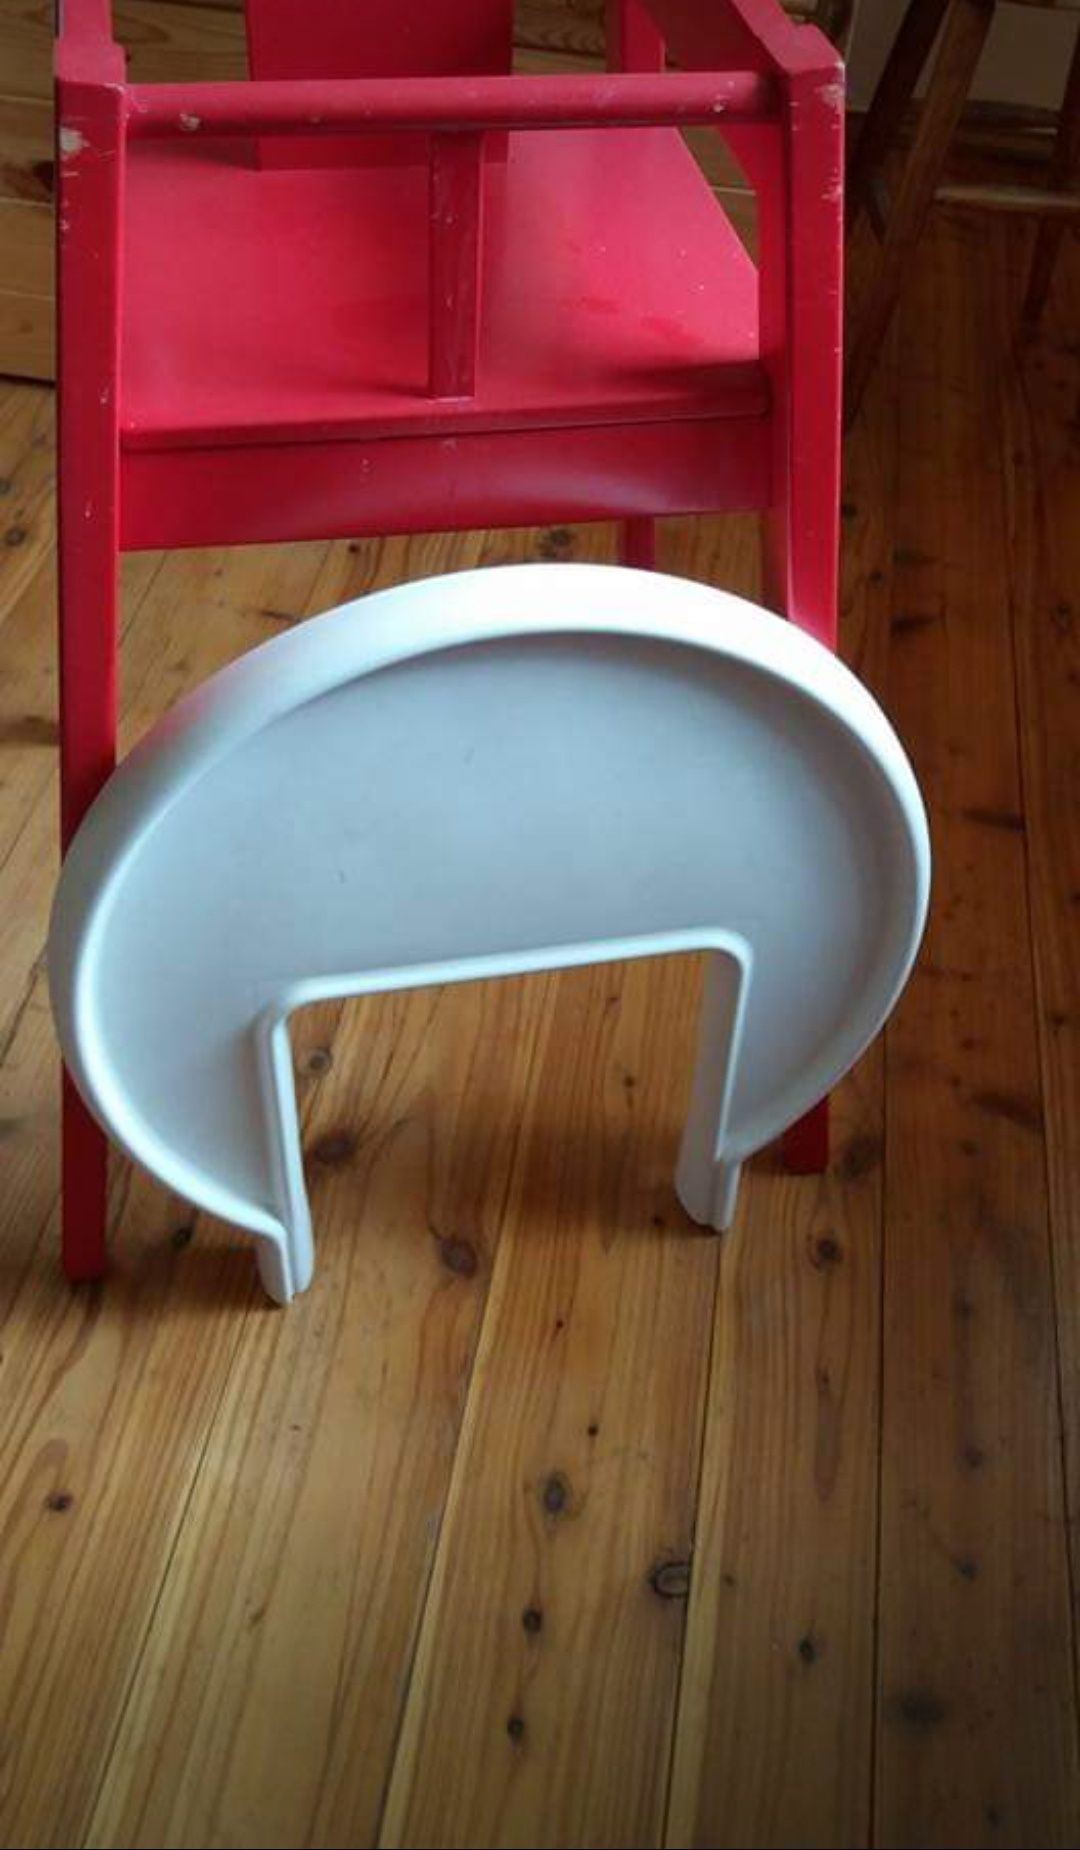 Krzesełko do karmienia